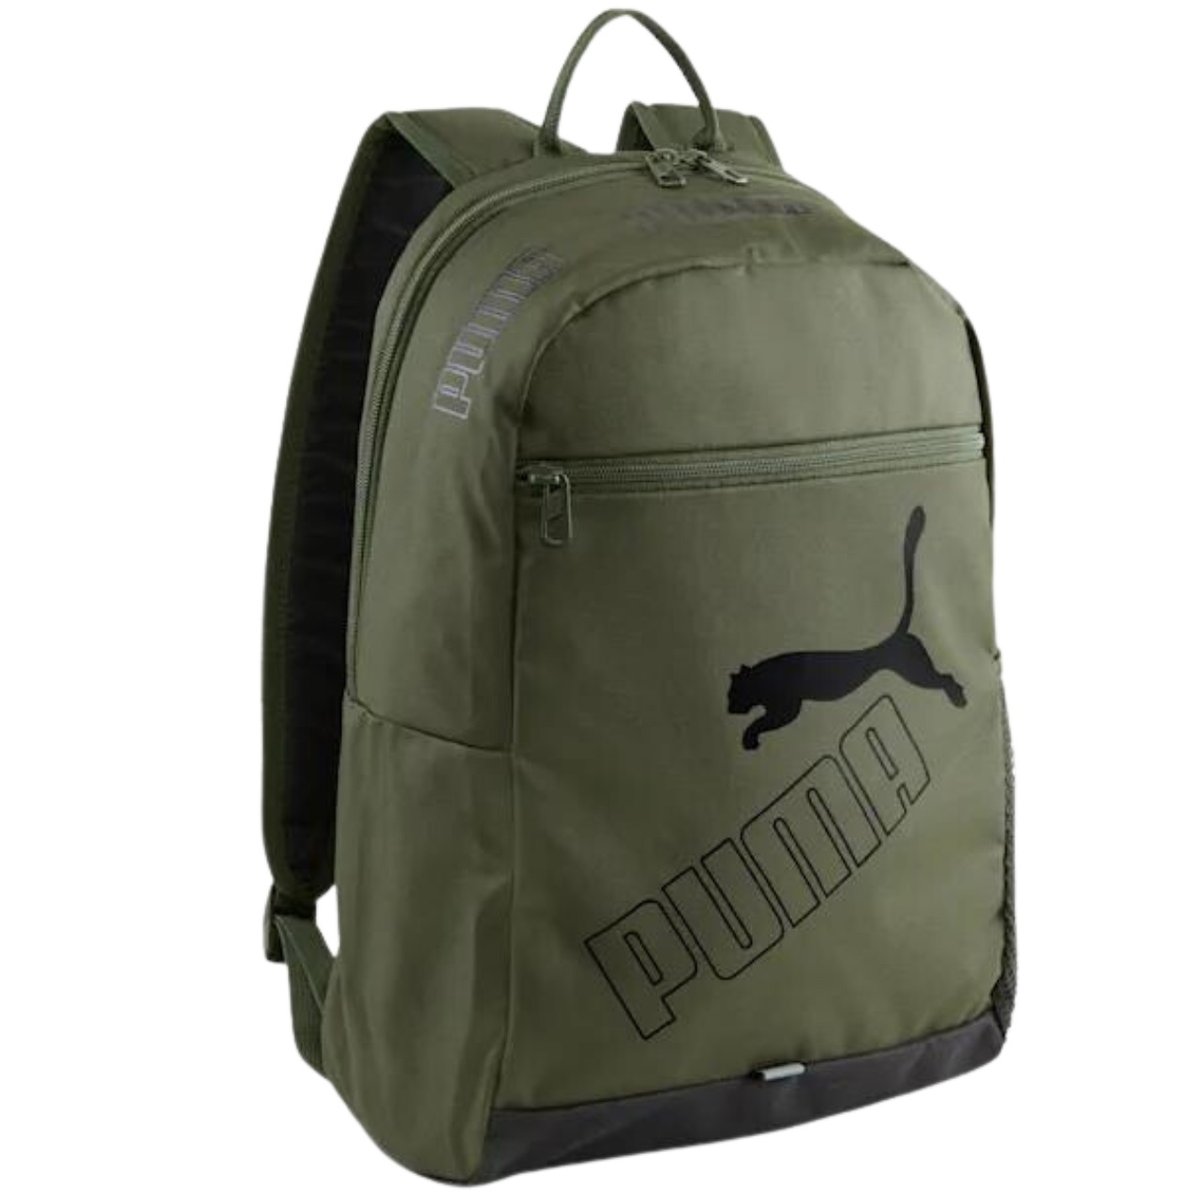 Puma, Plecak sportowy Phase II Backpack, 079952-03, Khaki